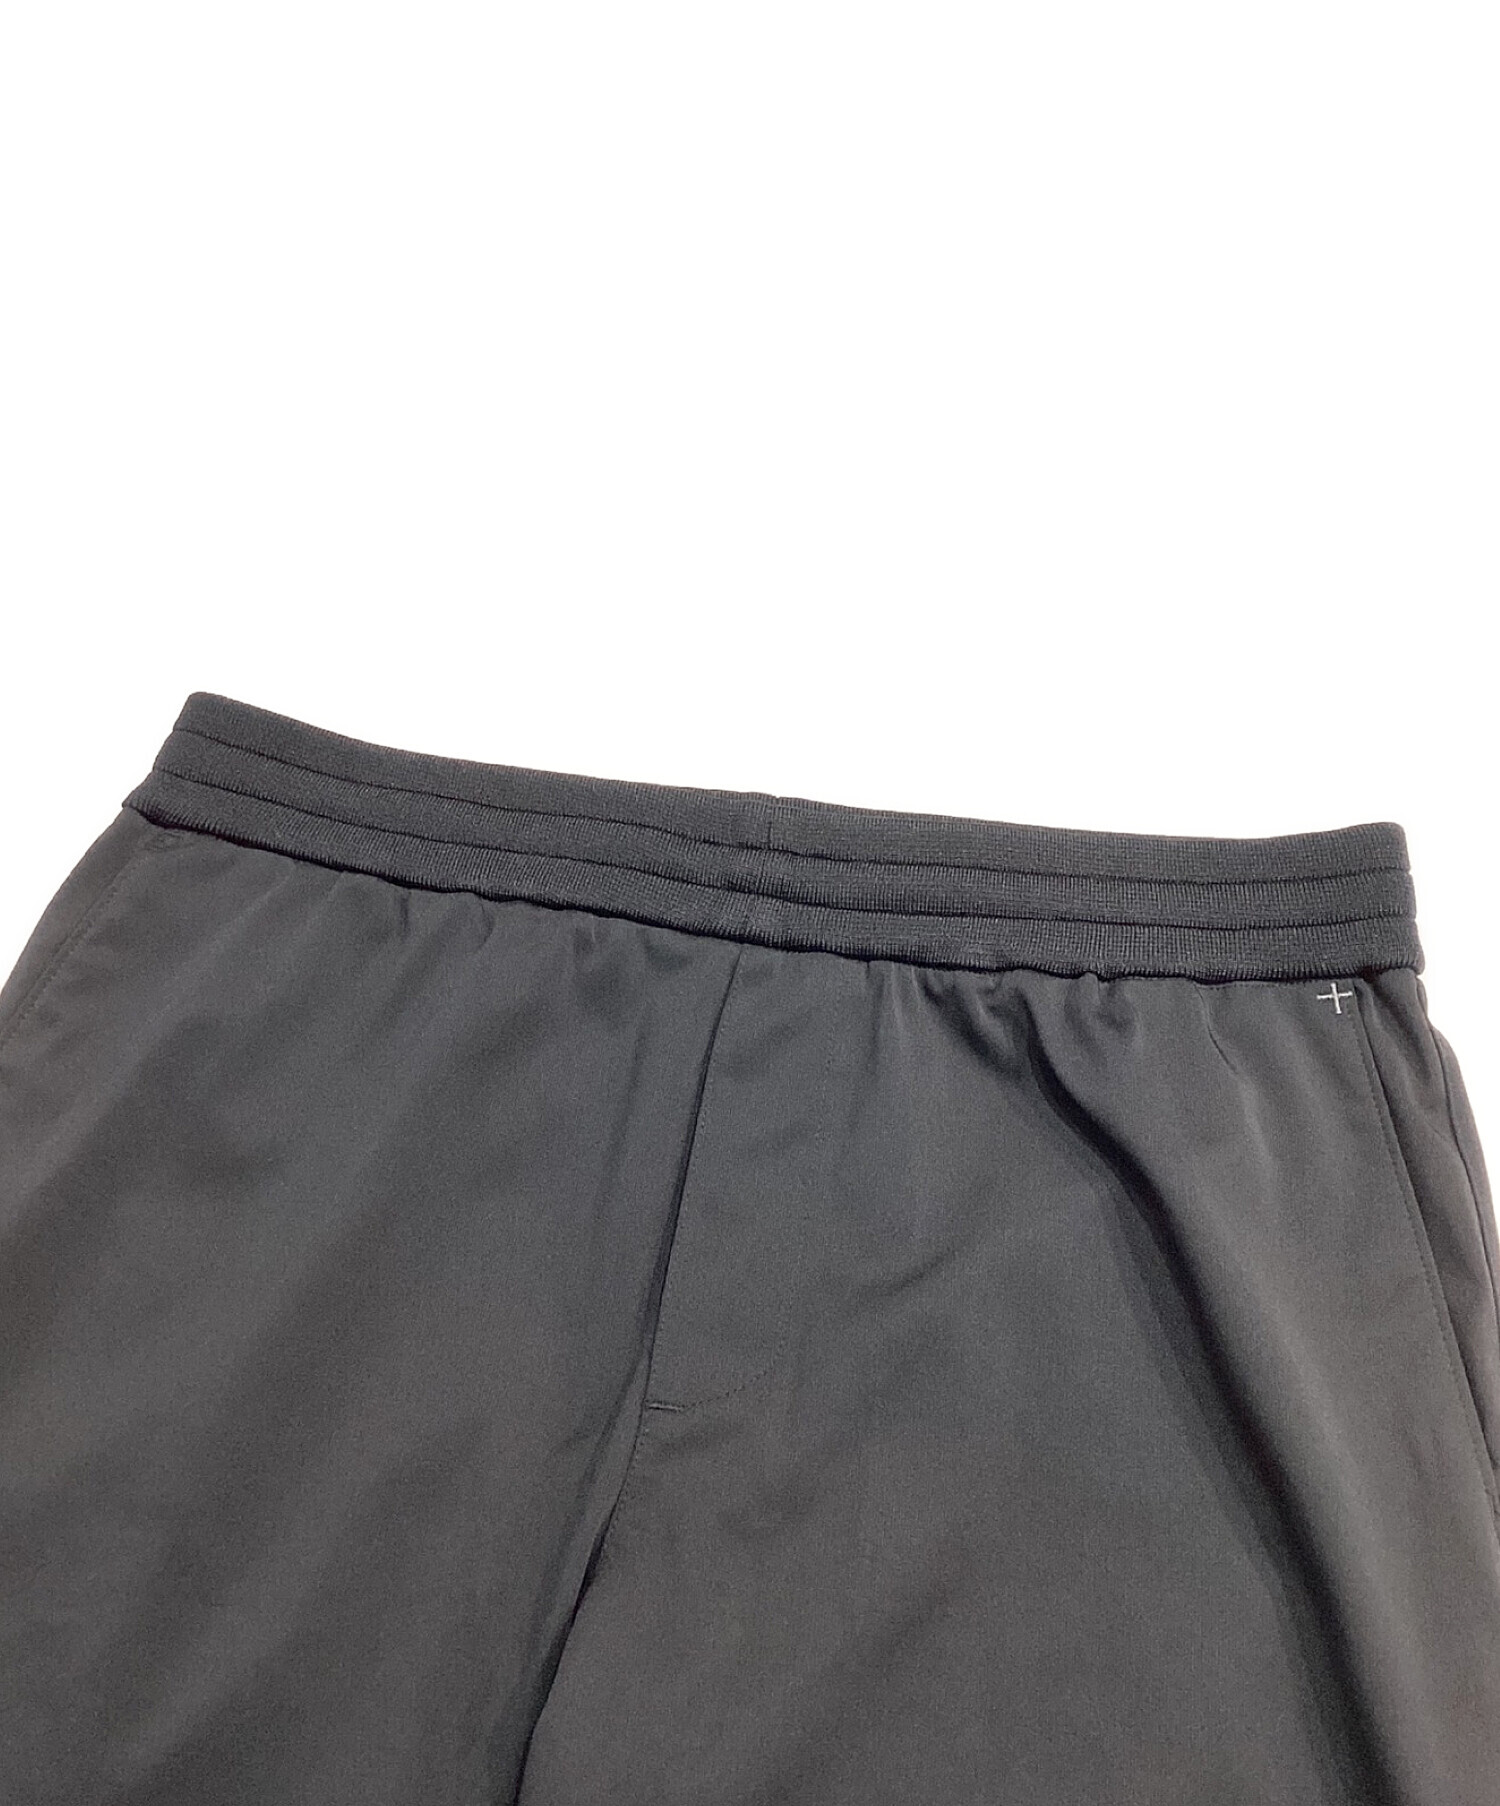 +CLOTHET (クロスクローゼット) マットツイストジョガーパンツ ブラック サイズ:3